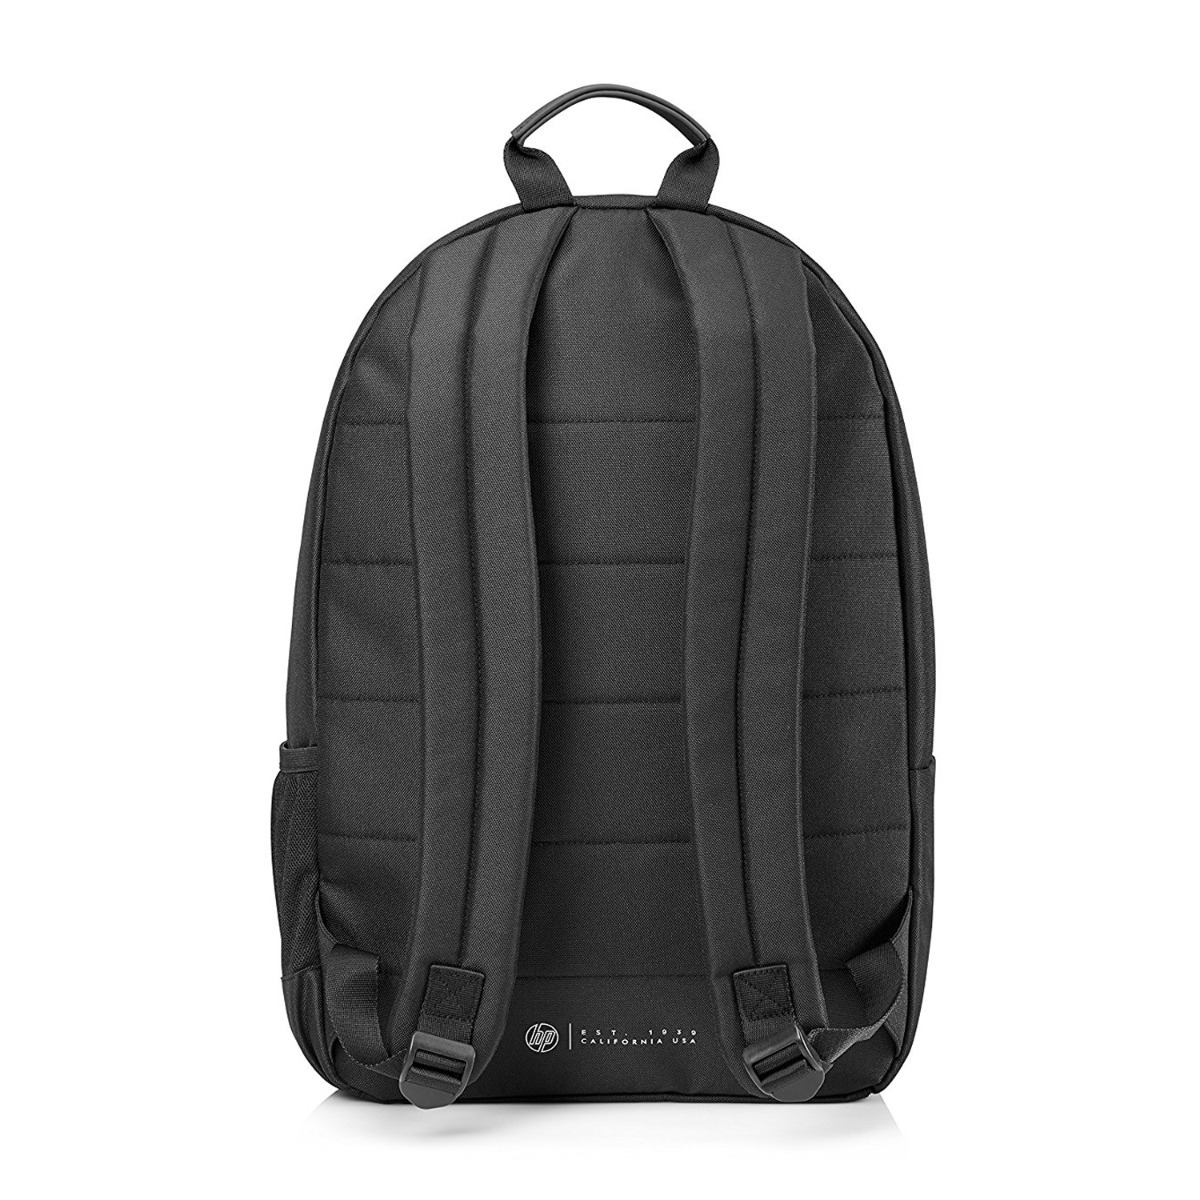 HP - Classic Backpack Bag - 15.6" - 1FK05AA